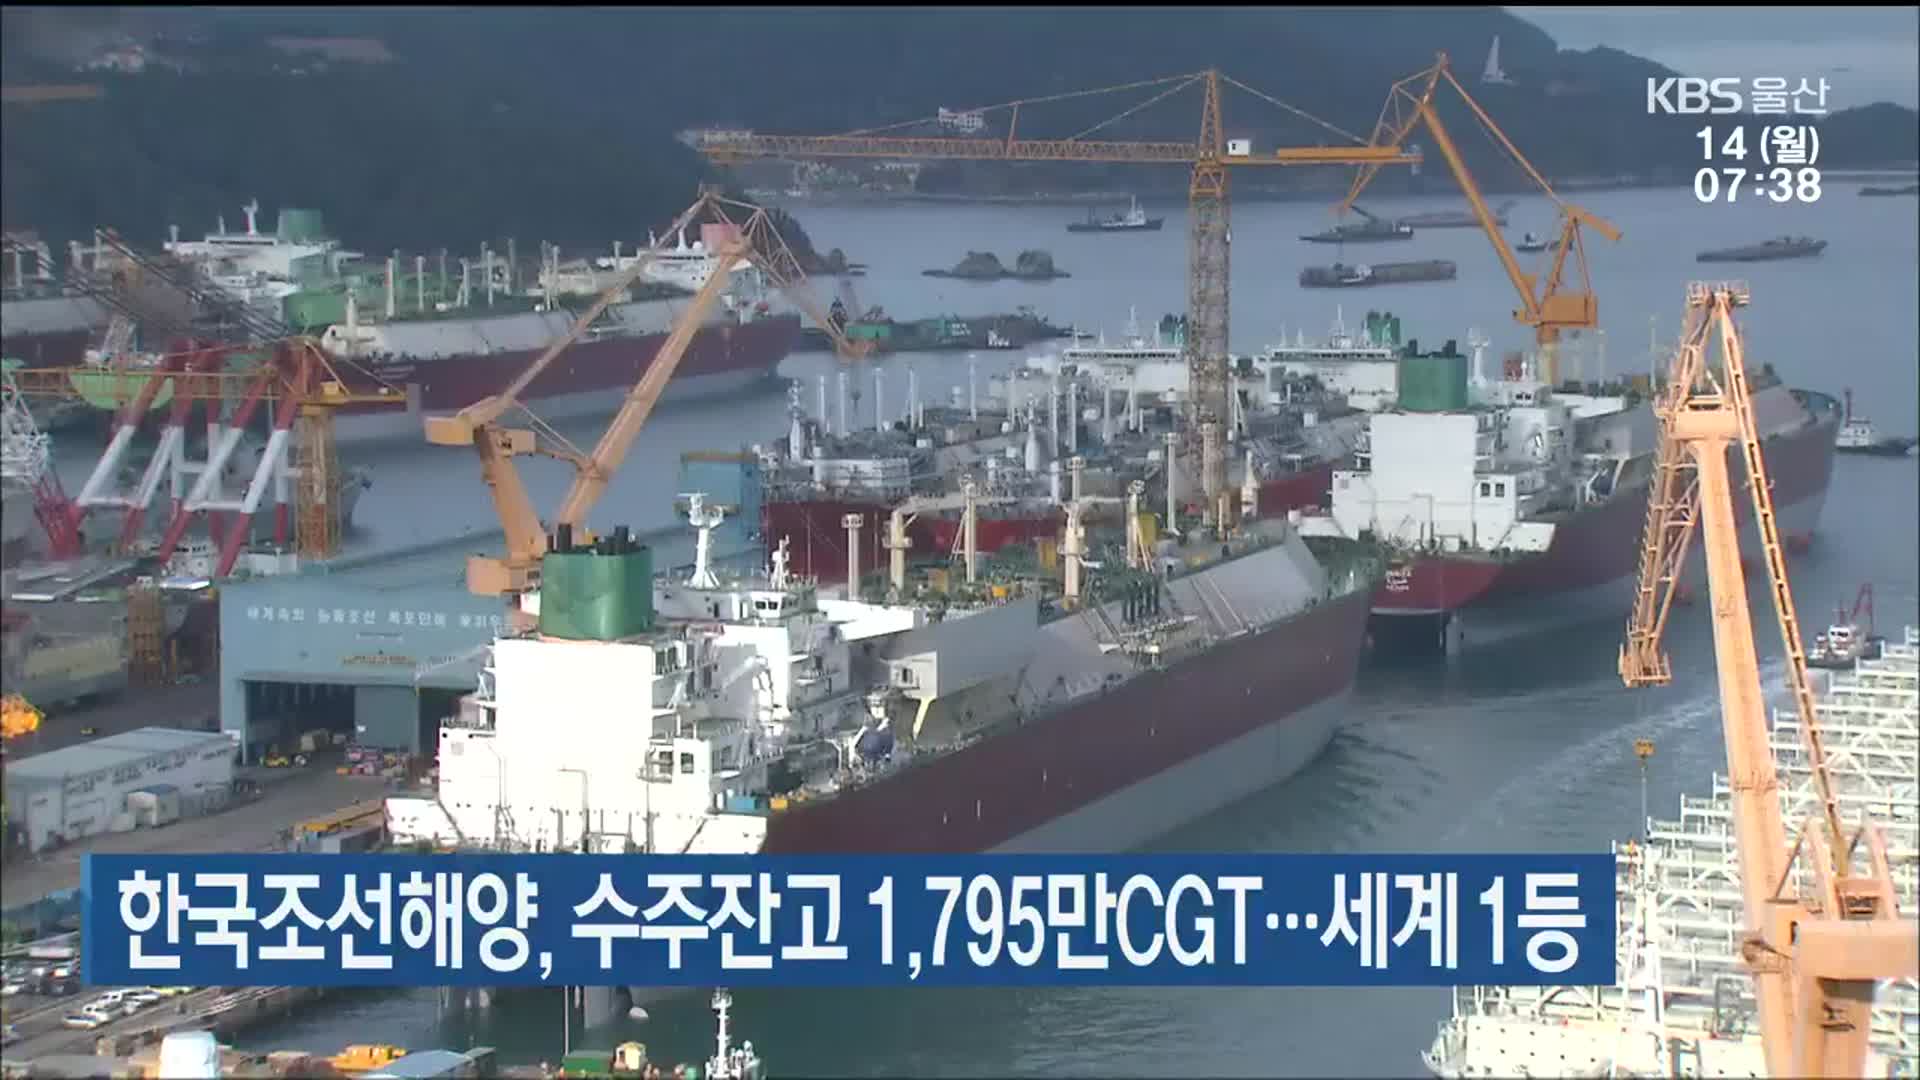 한국조선해양, 수주잔고 1,795만CGT…세계 1등